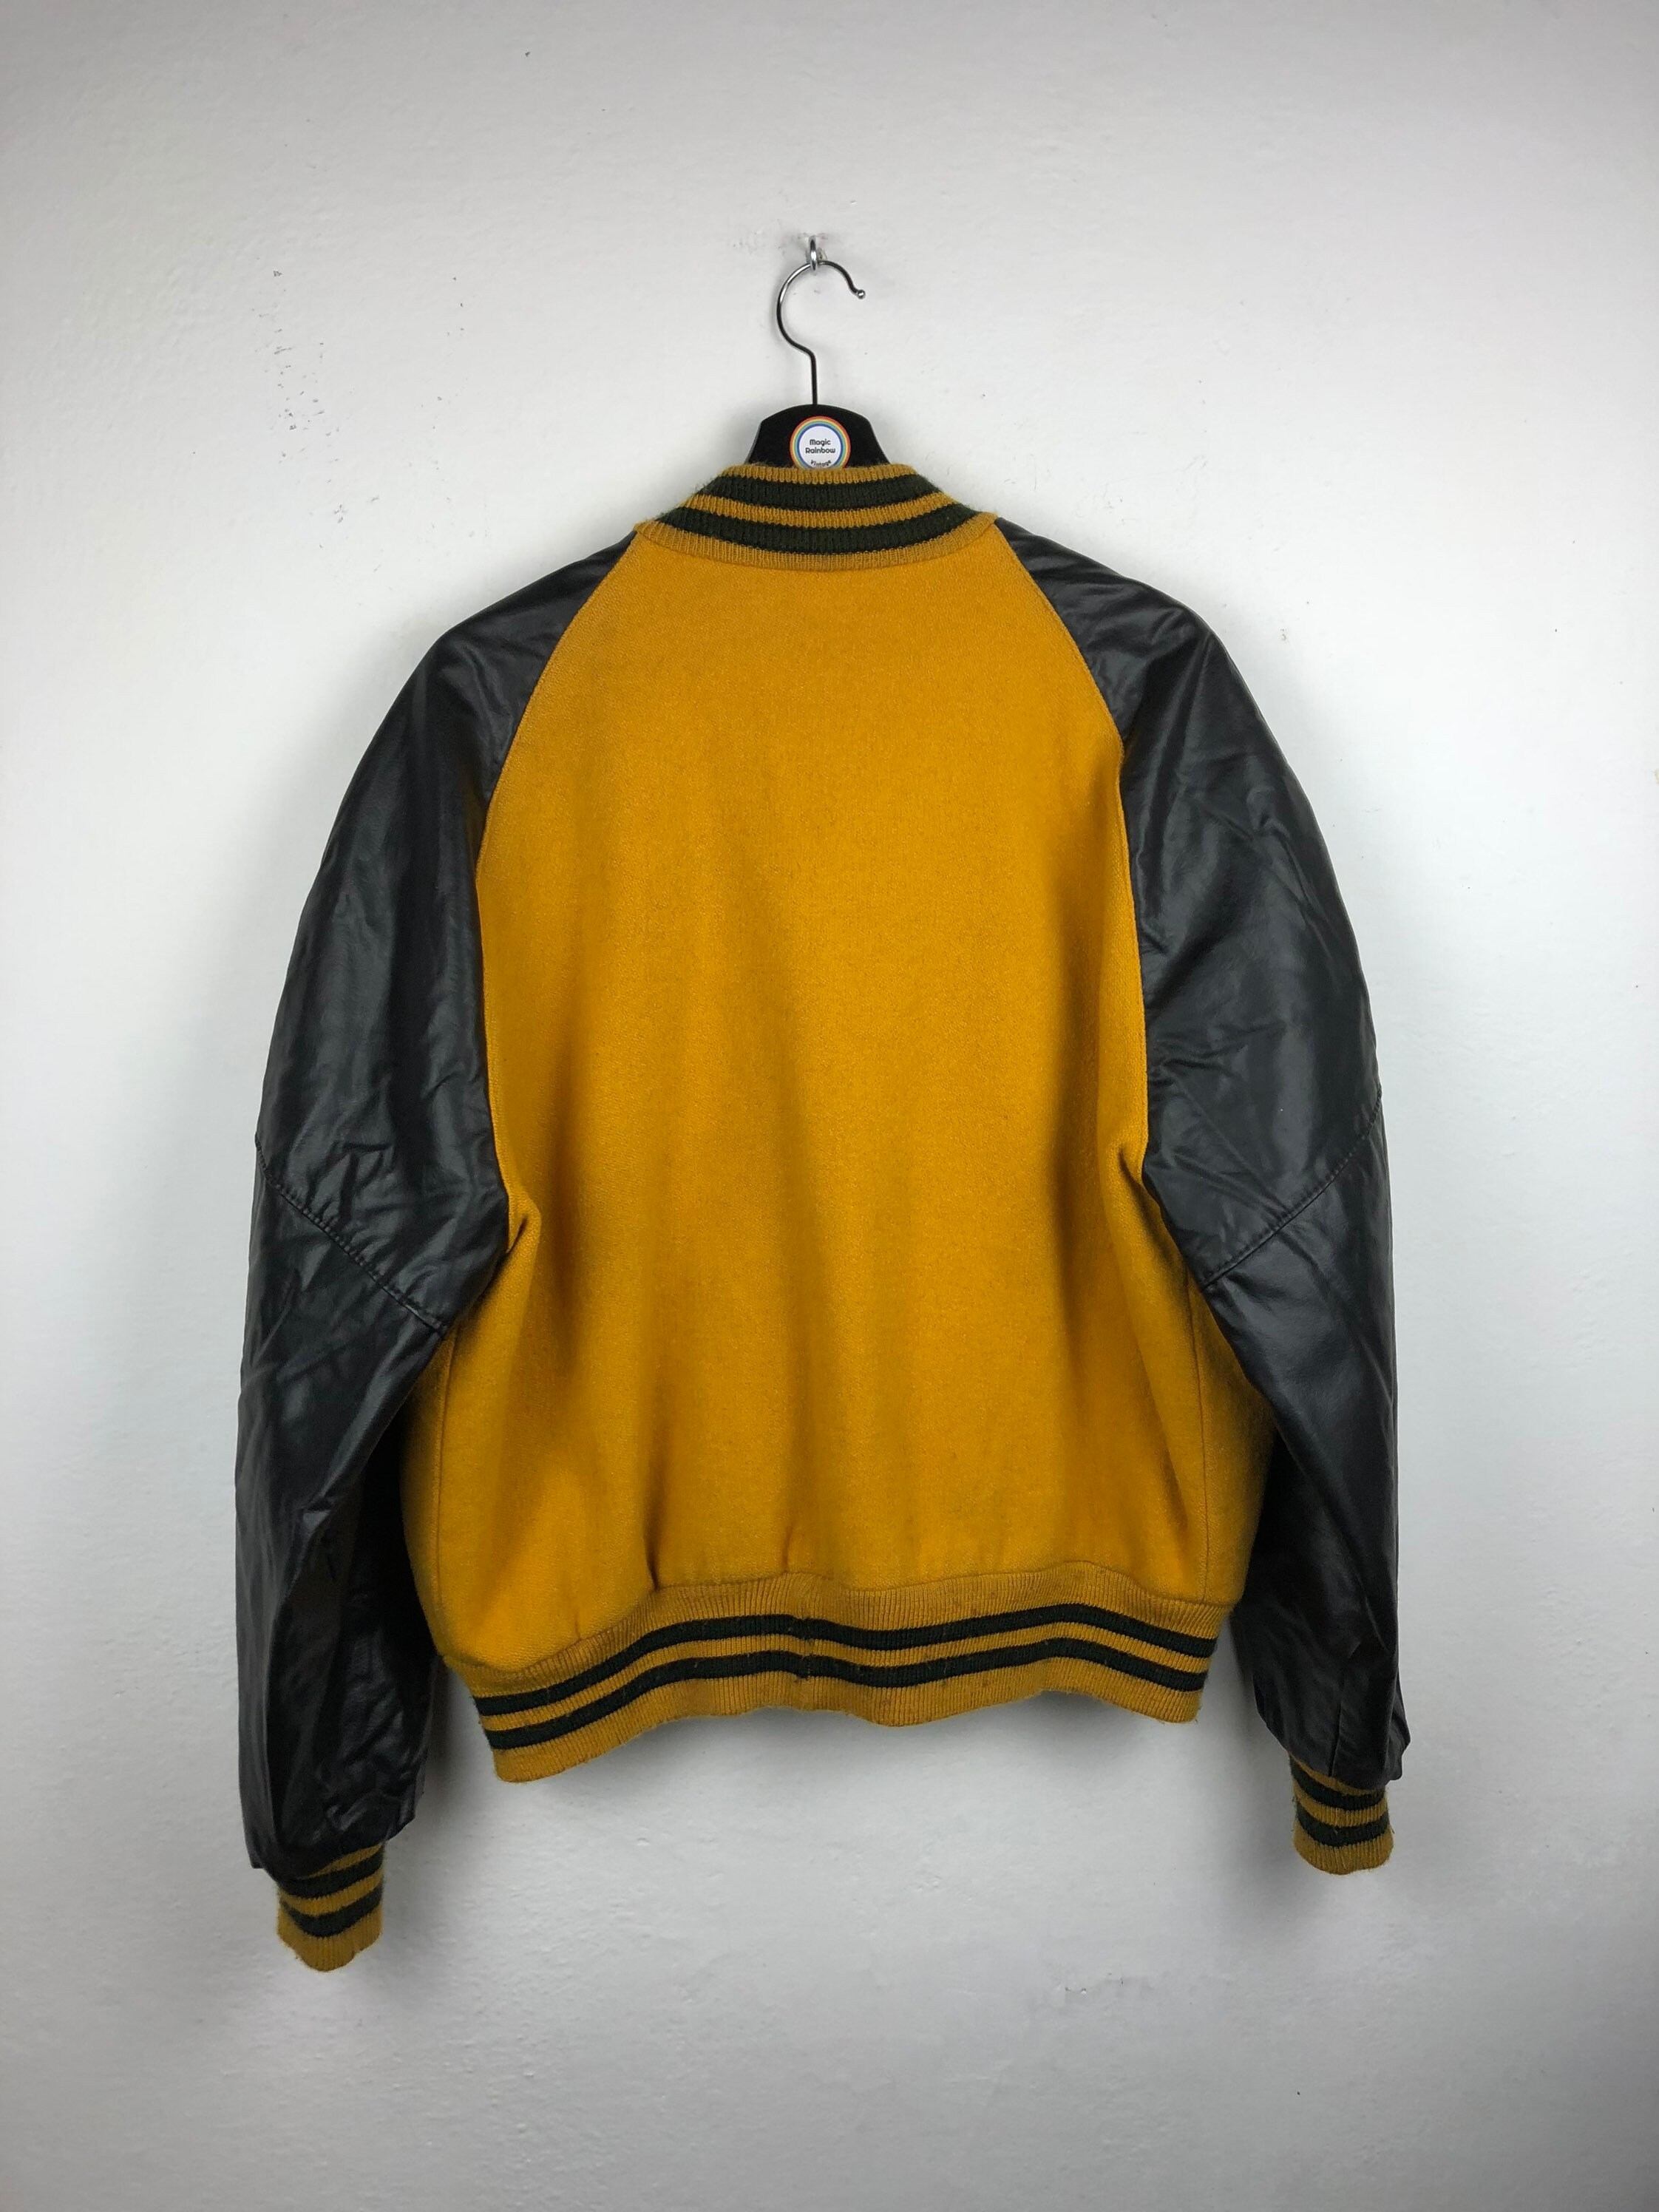 Varsity jacket college America vintage 90' bomber | Etsy